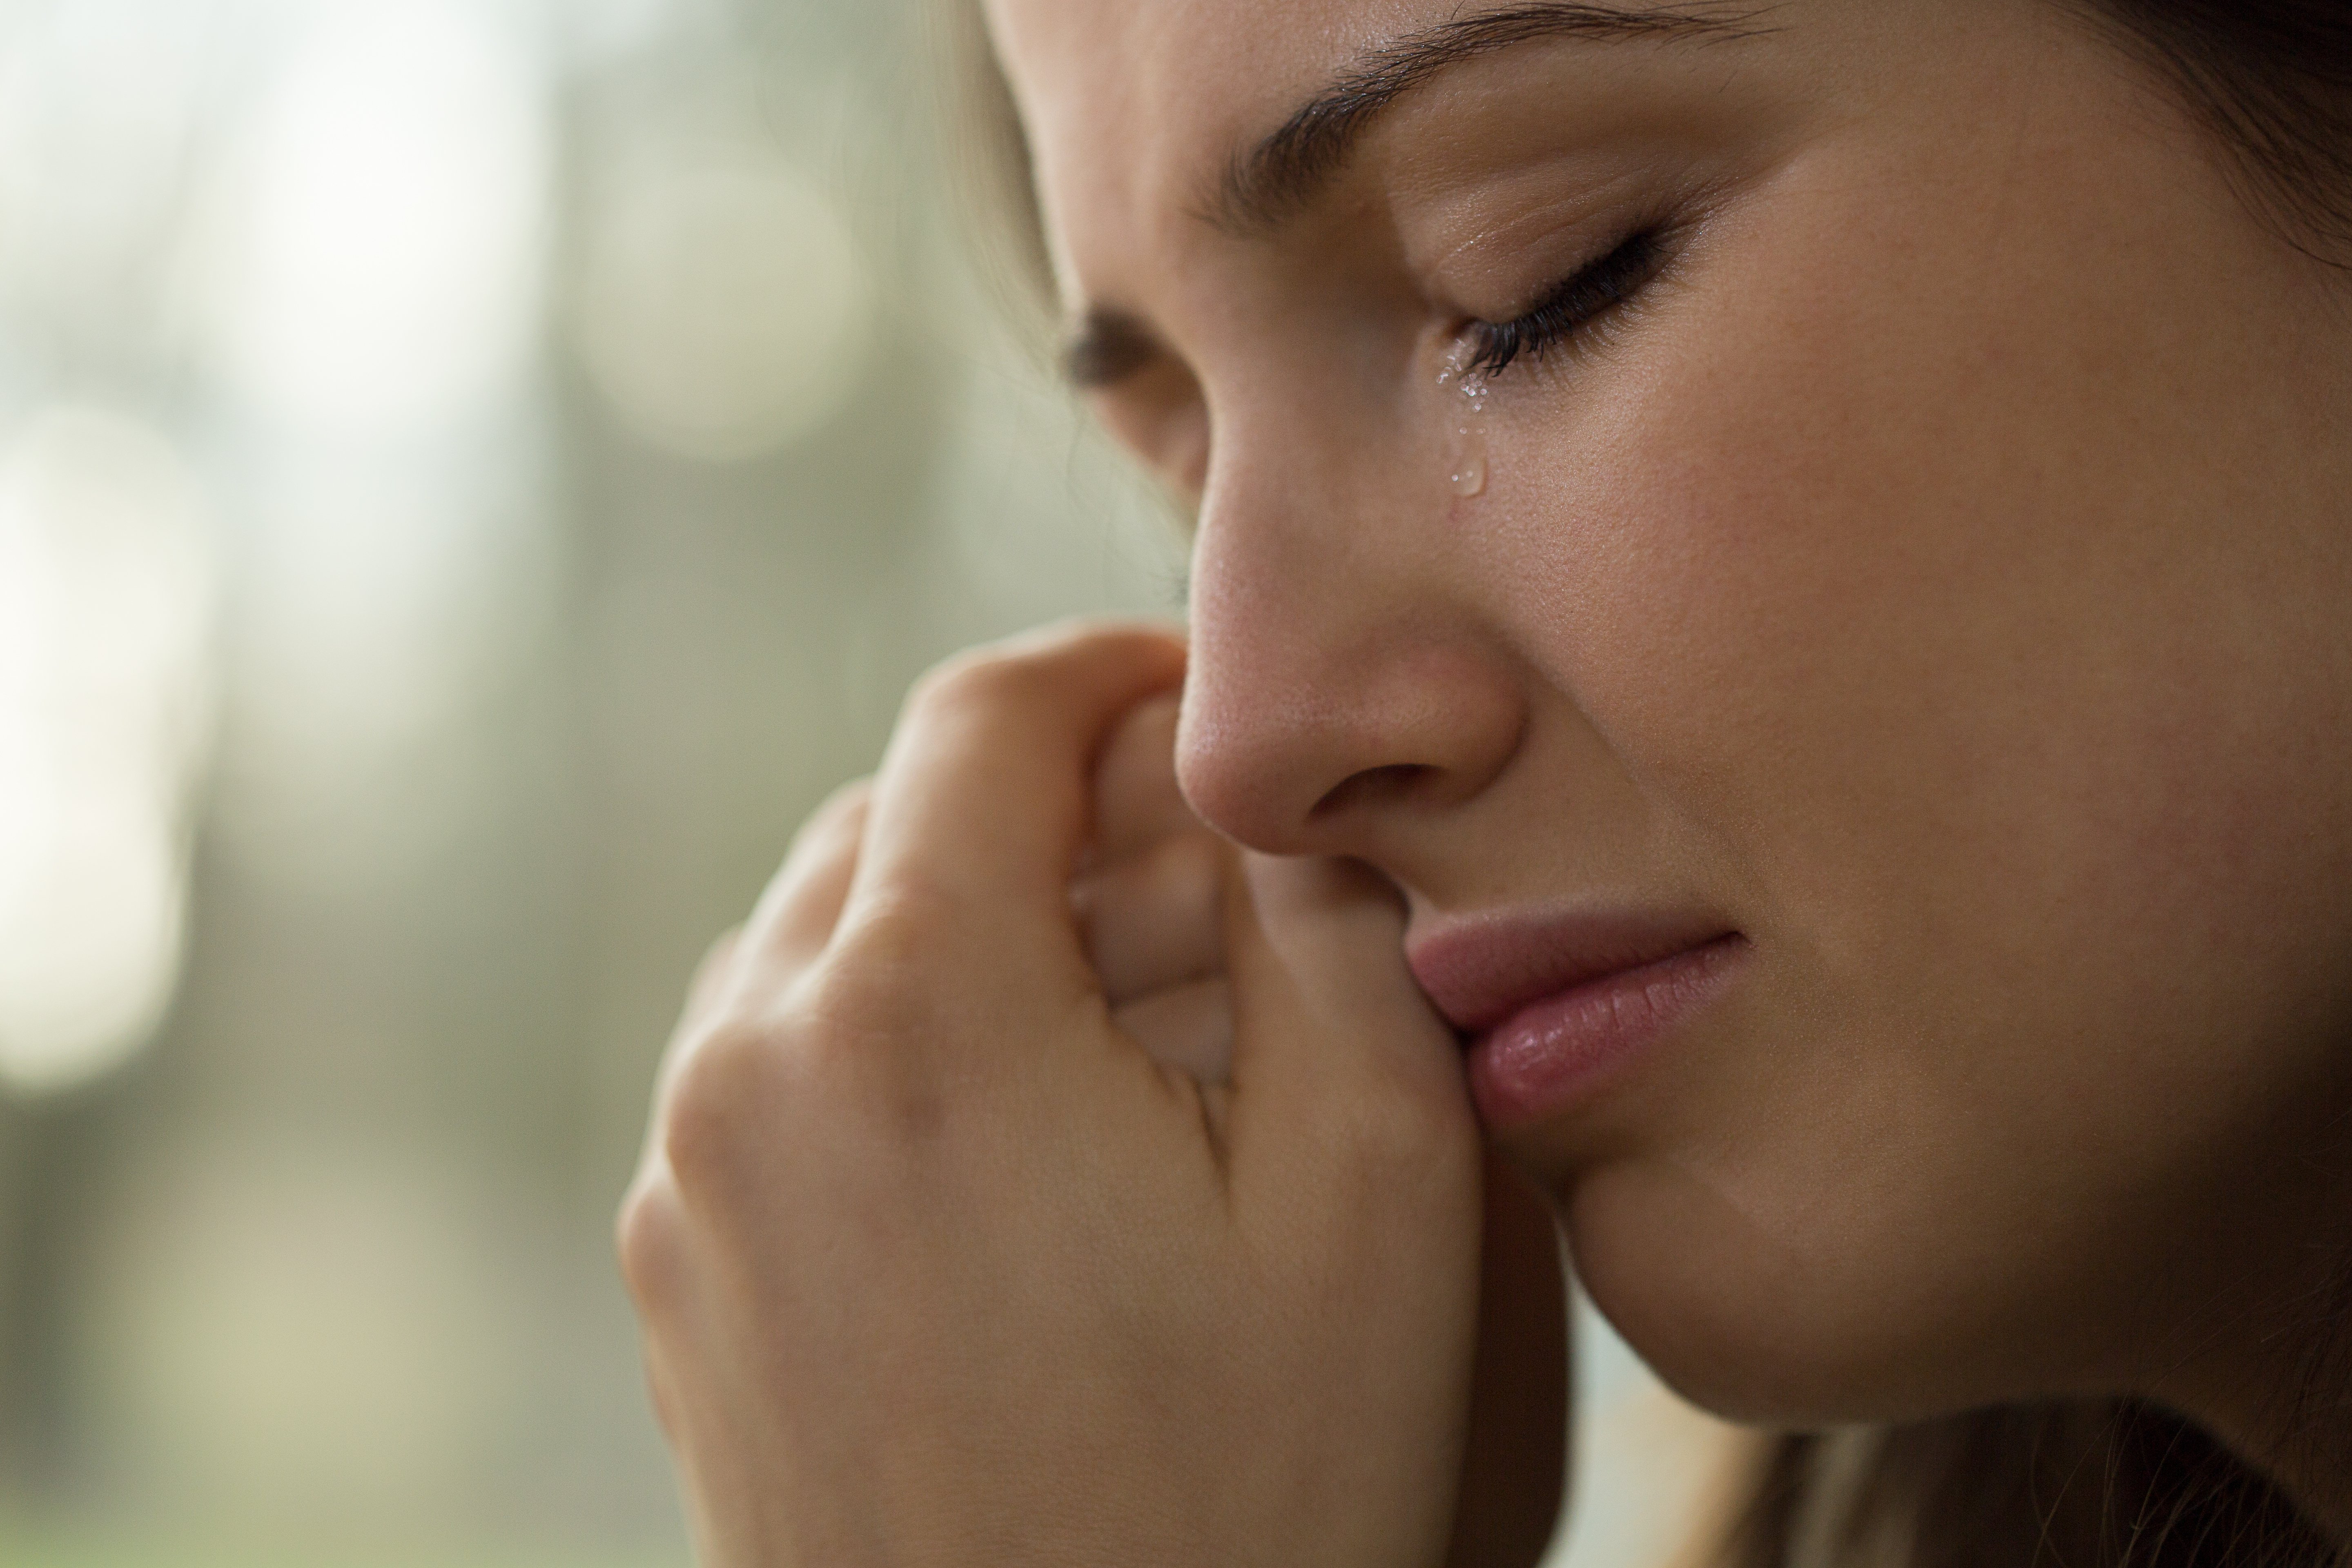 Nahaufnahme der jungen Frau, die weint | Quelle: Shutterstock